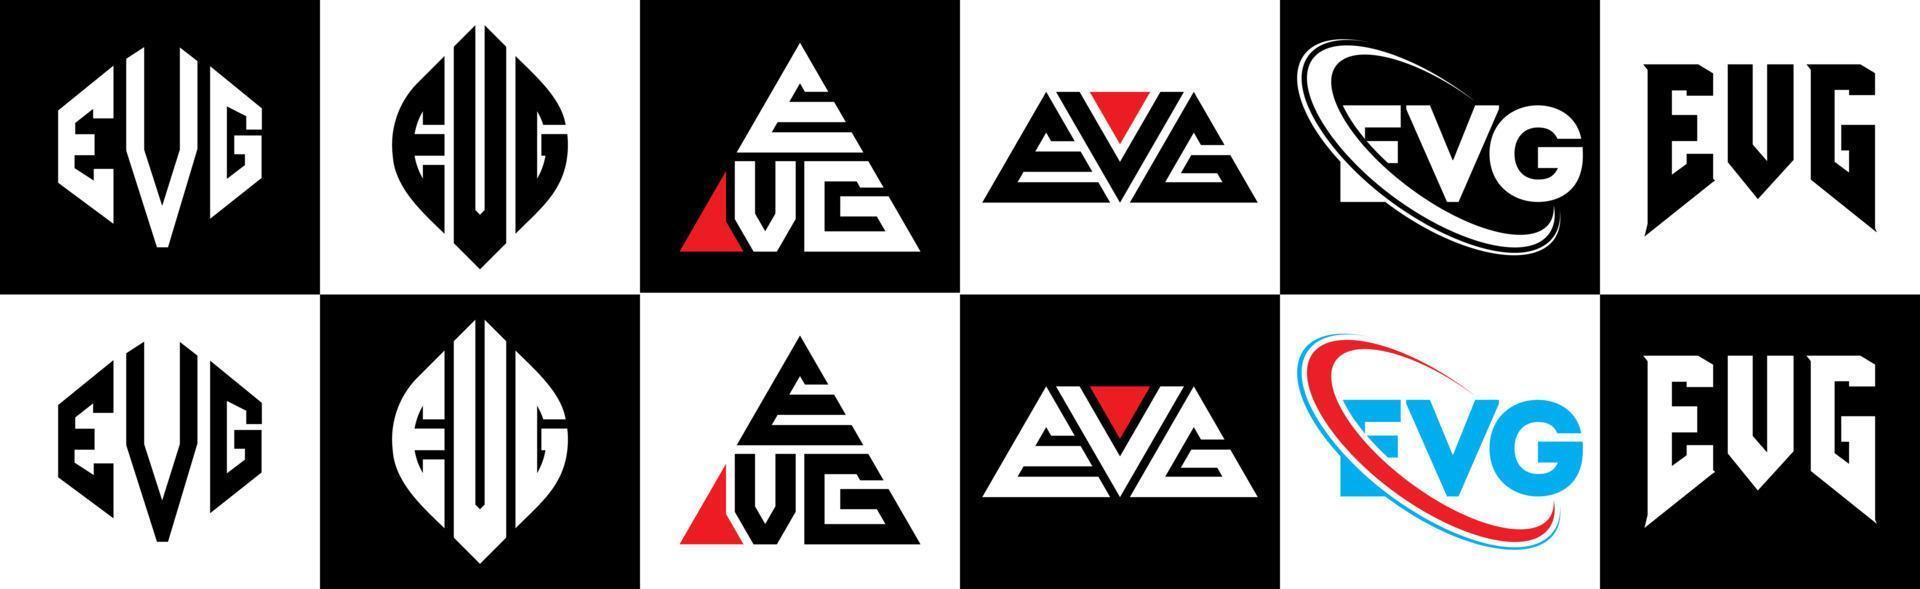 Evg-Buchstaben-Logo-Design in sechs Stilen. evg polygon, kreis, dreieck, sechseck, flach und einfacher stil mit schwarz-weißem buchstabenlogo in einer zeichenfläche. evg minimalistisches und klassisches Logo vektor